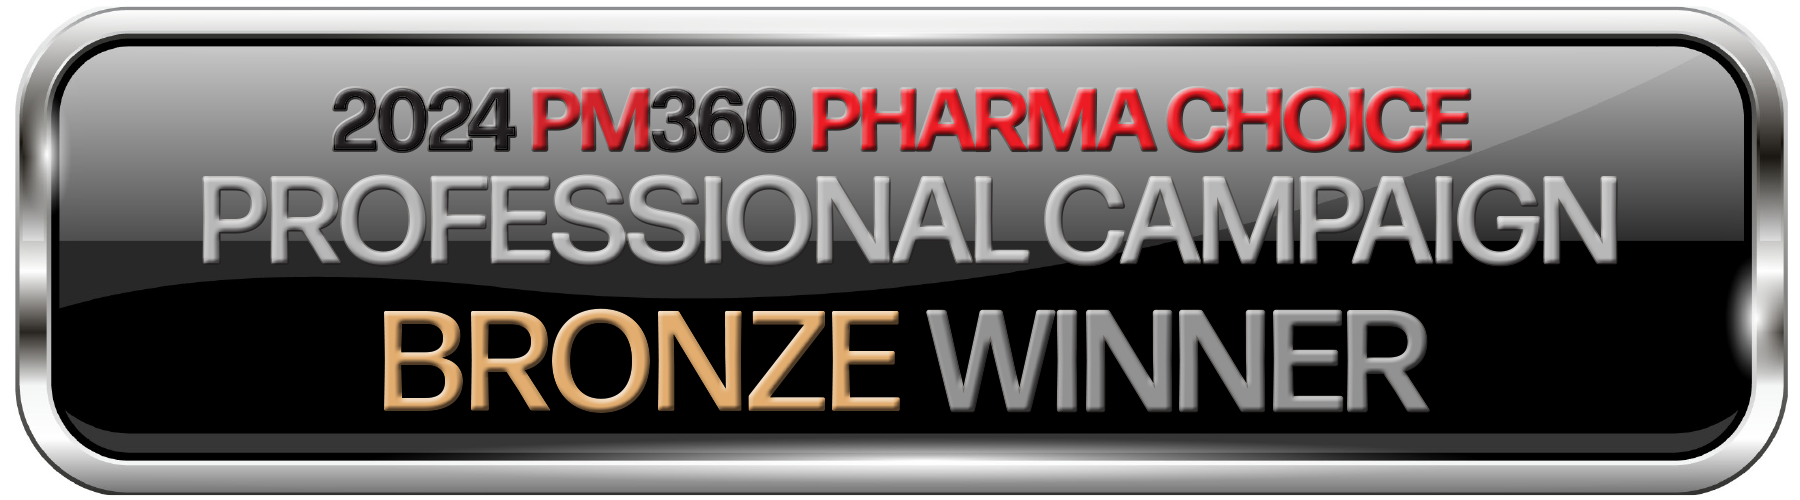 PM360 Pharma Choice